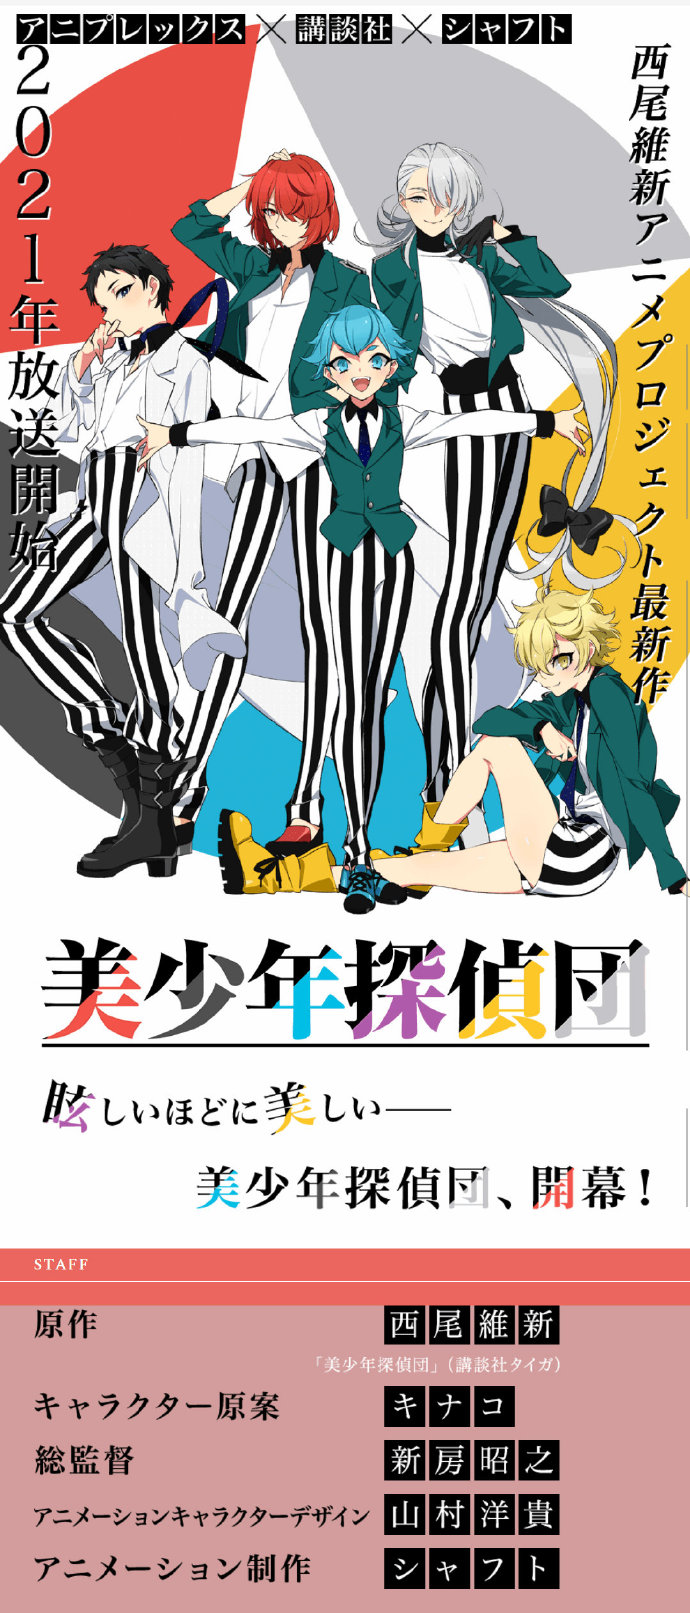 物语作者西尾维新『美少年侦探团』TV动画化，明年播出插图